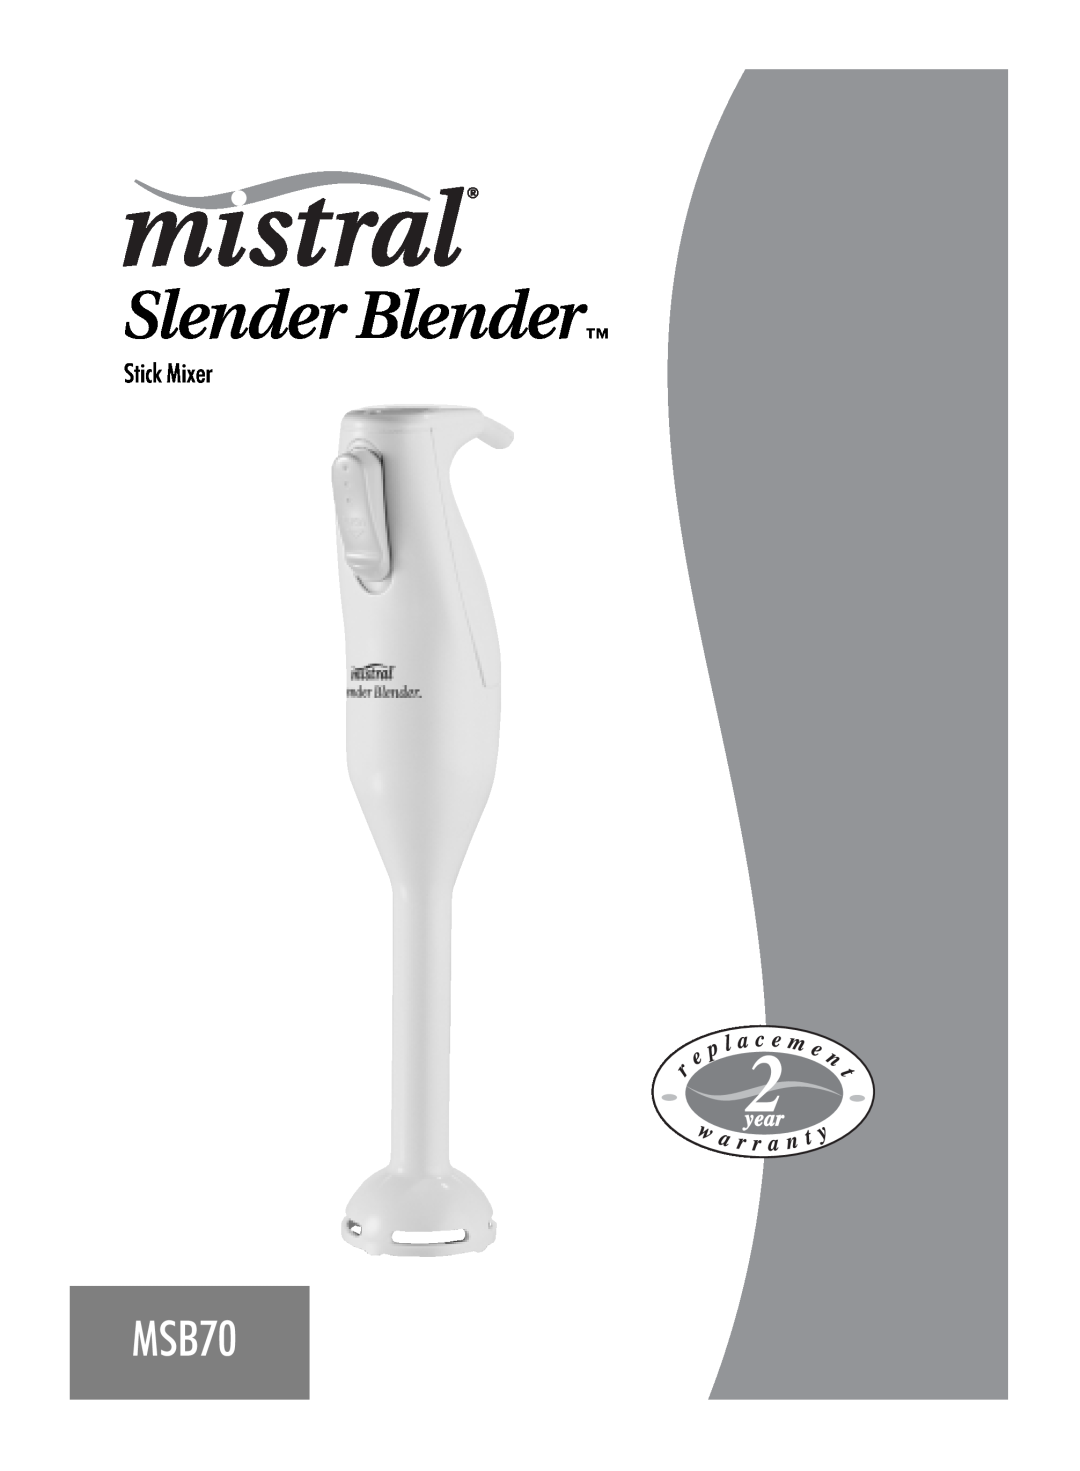 Mistral MSB70 manual Slender Blender, Stick Mixer 